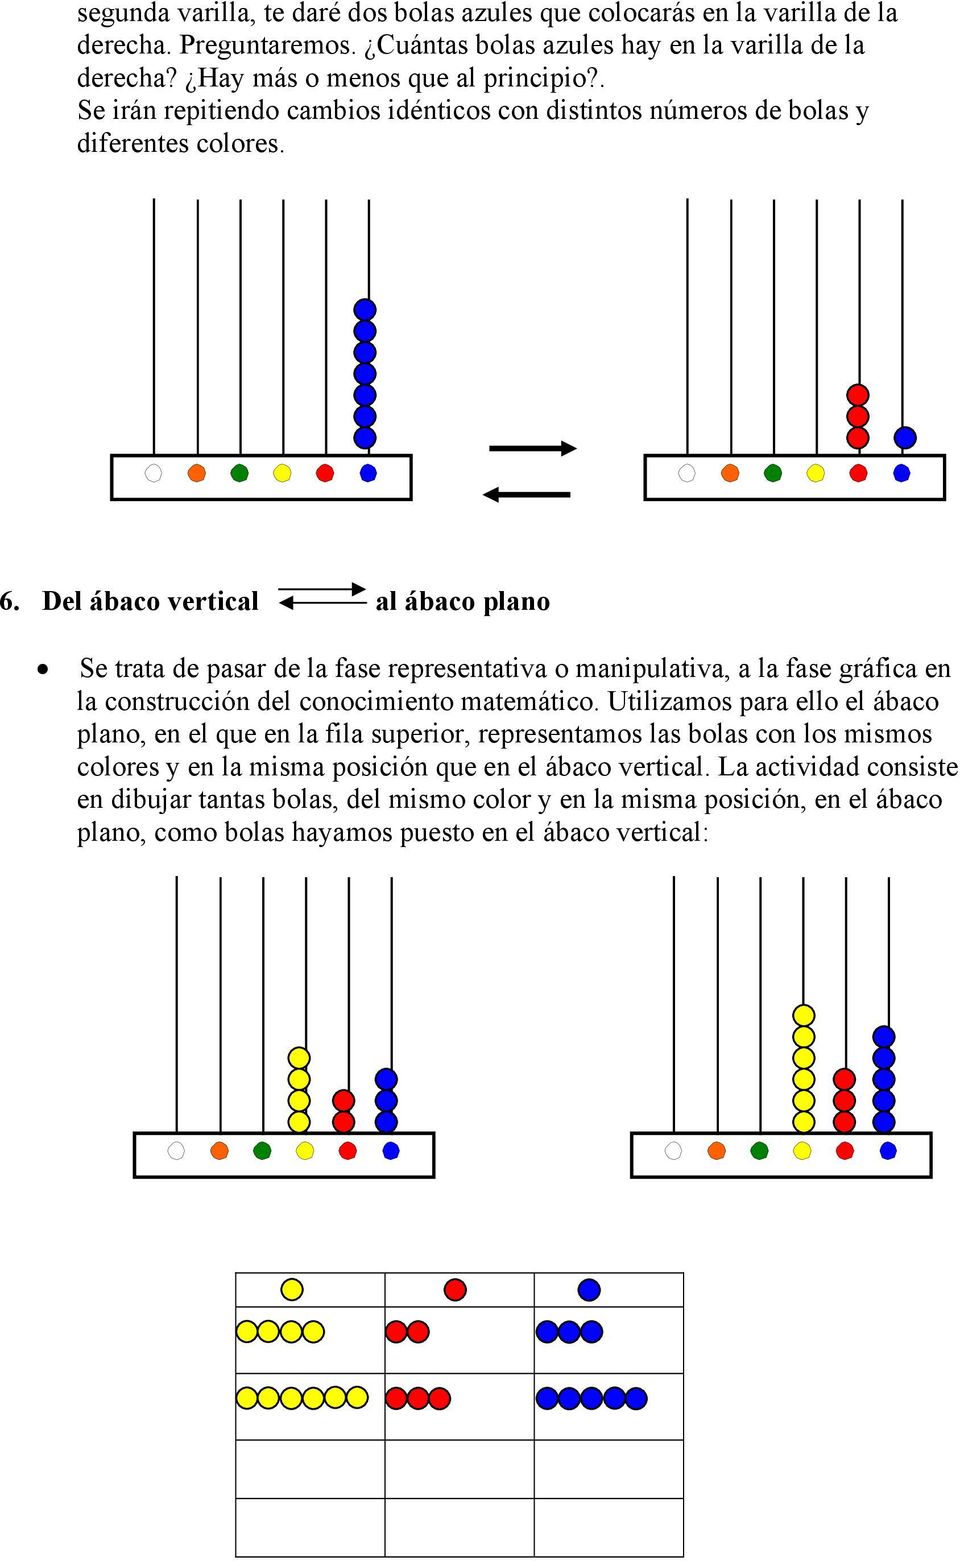 Del ábaco vertical al ábaco plano Se trata de pasar de la fase representativa o manipulativa, a la fase gráfica en la construcción del conocimiento matemático.